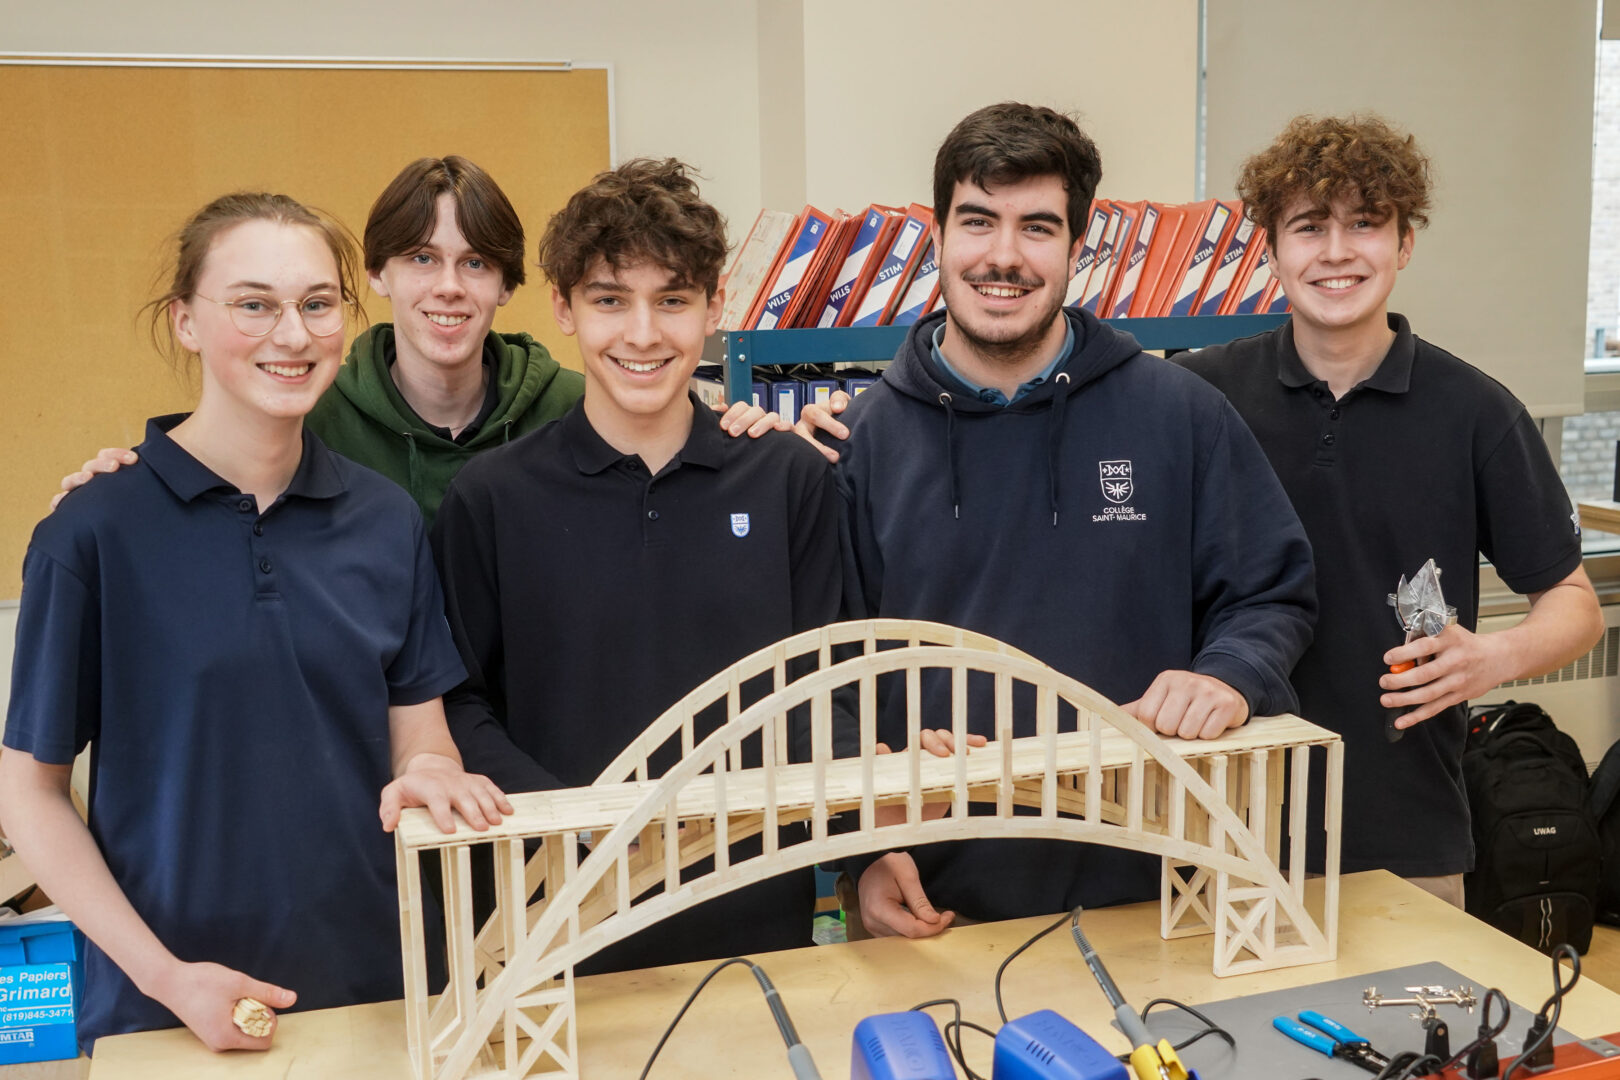 Cinq des six étudiants des deux équipes gagnantes en compagnie du pont ayant obtenu la 1re place. Photo François Larivière | Le Courrier ©